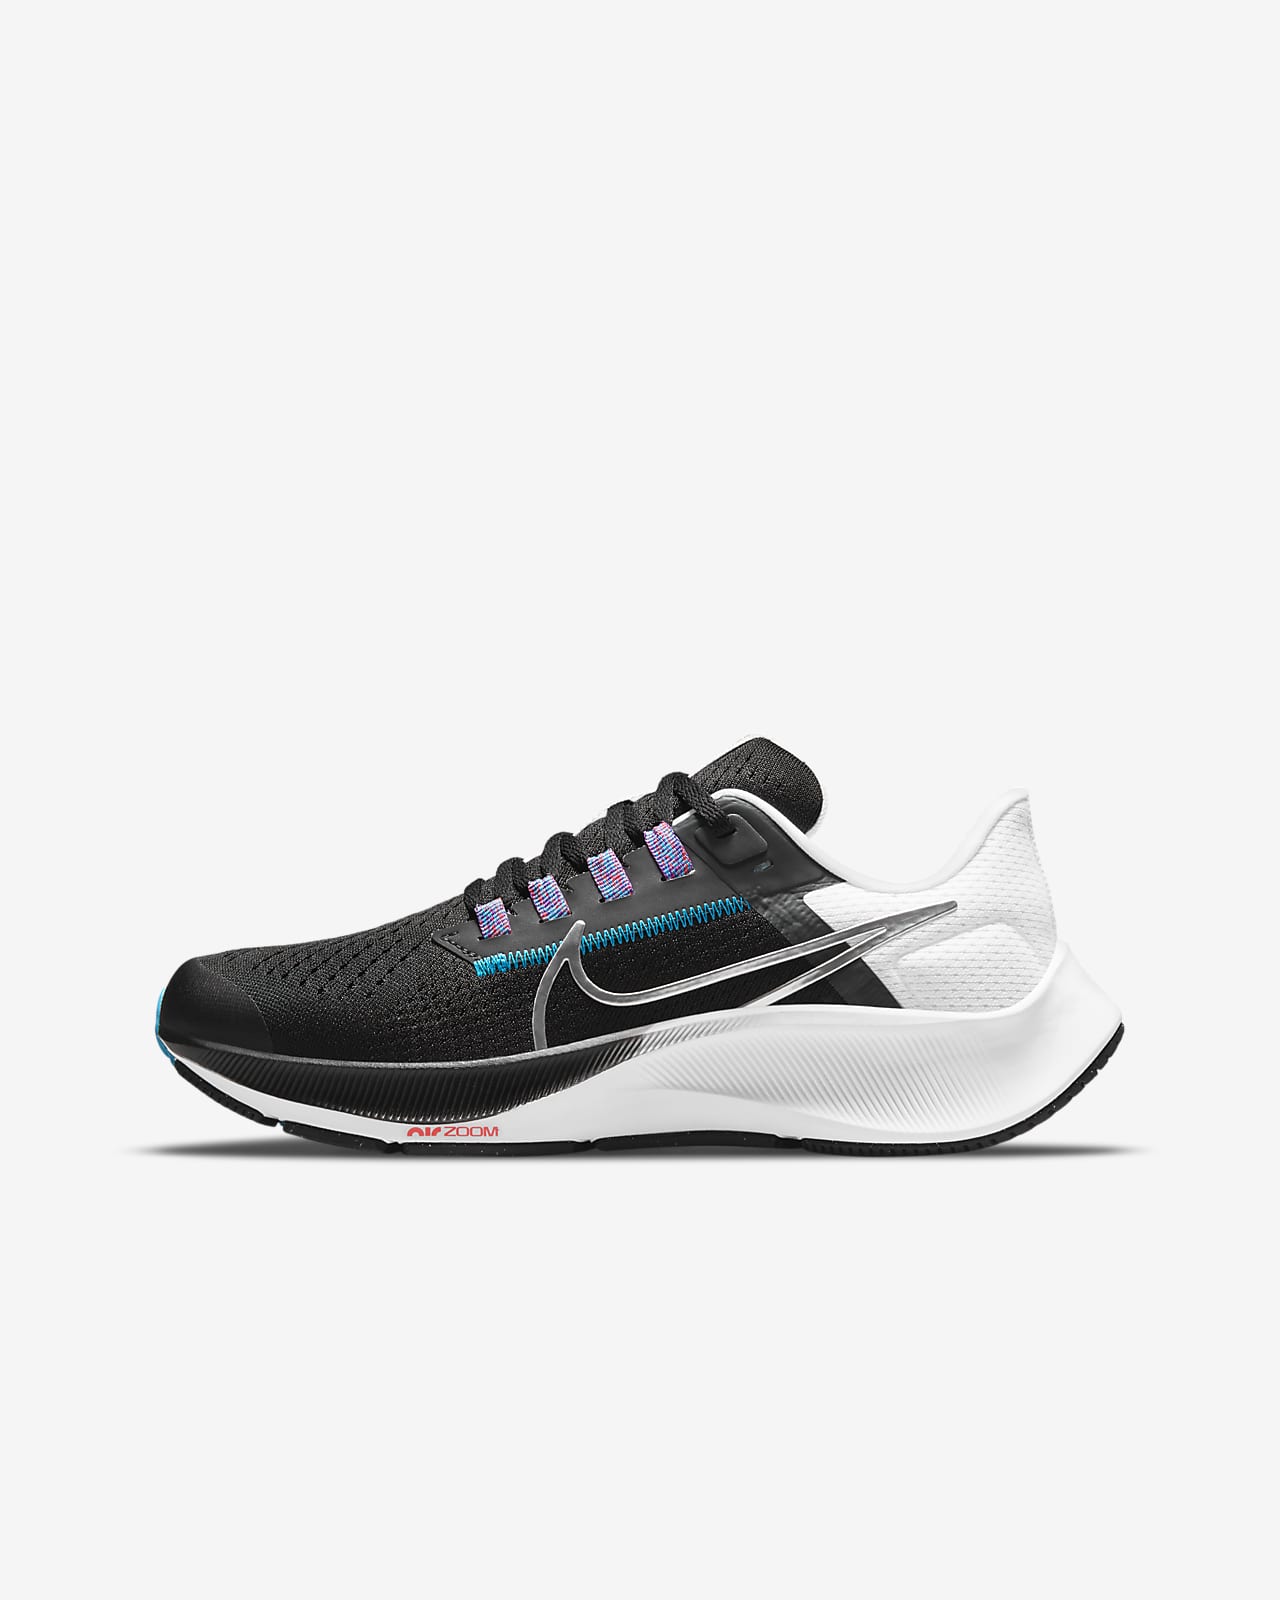 Nike Air Zoom Pegasus 38 Hardloopschoenen voor kleuters/kids (straat)